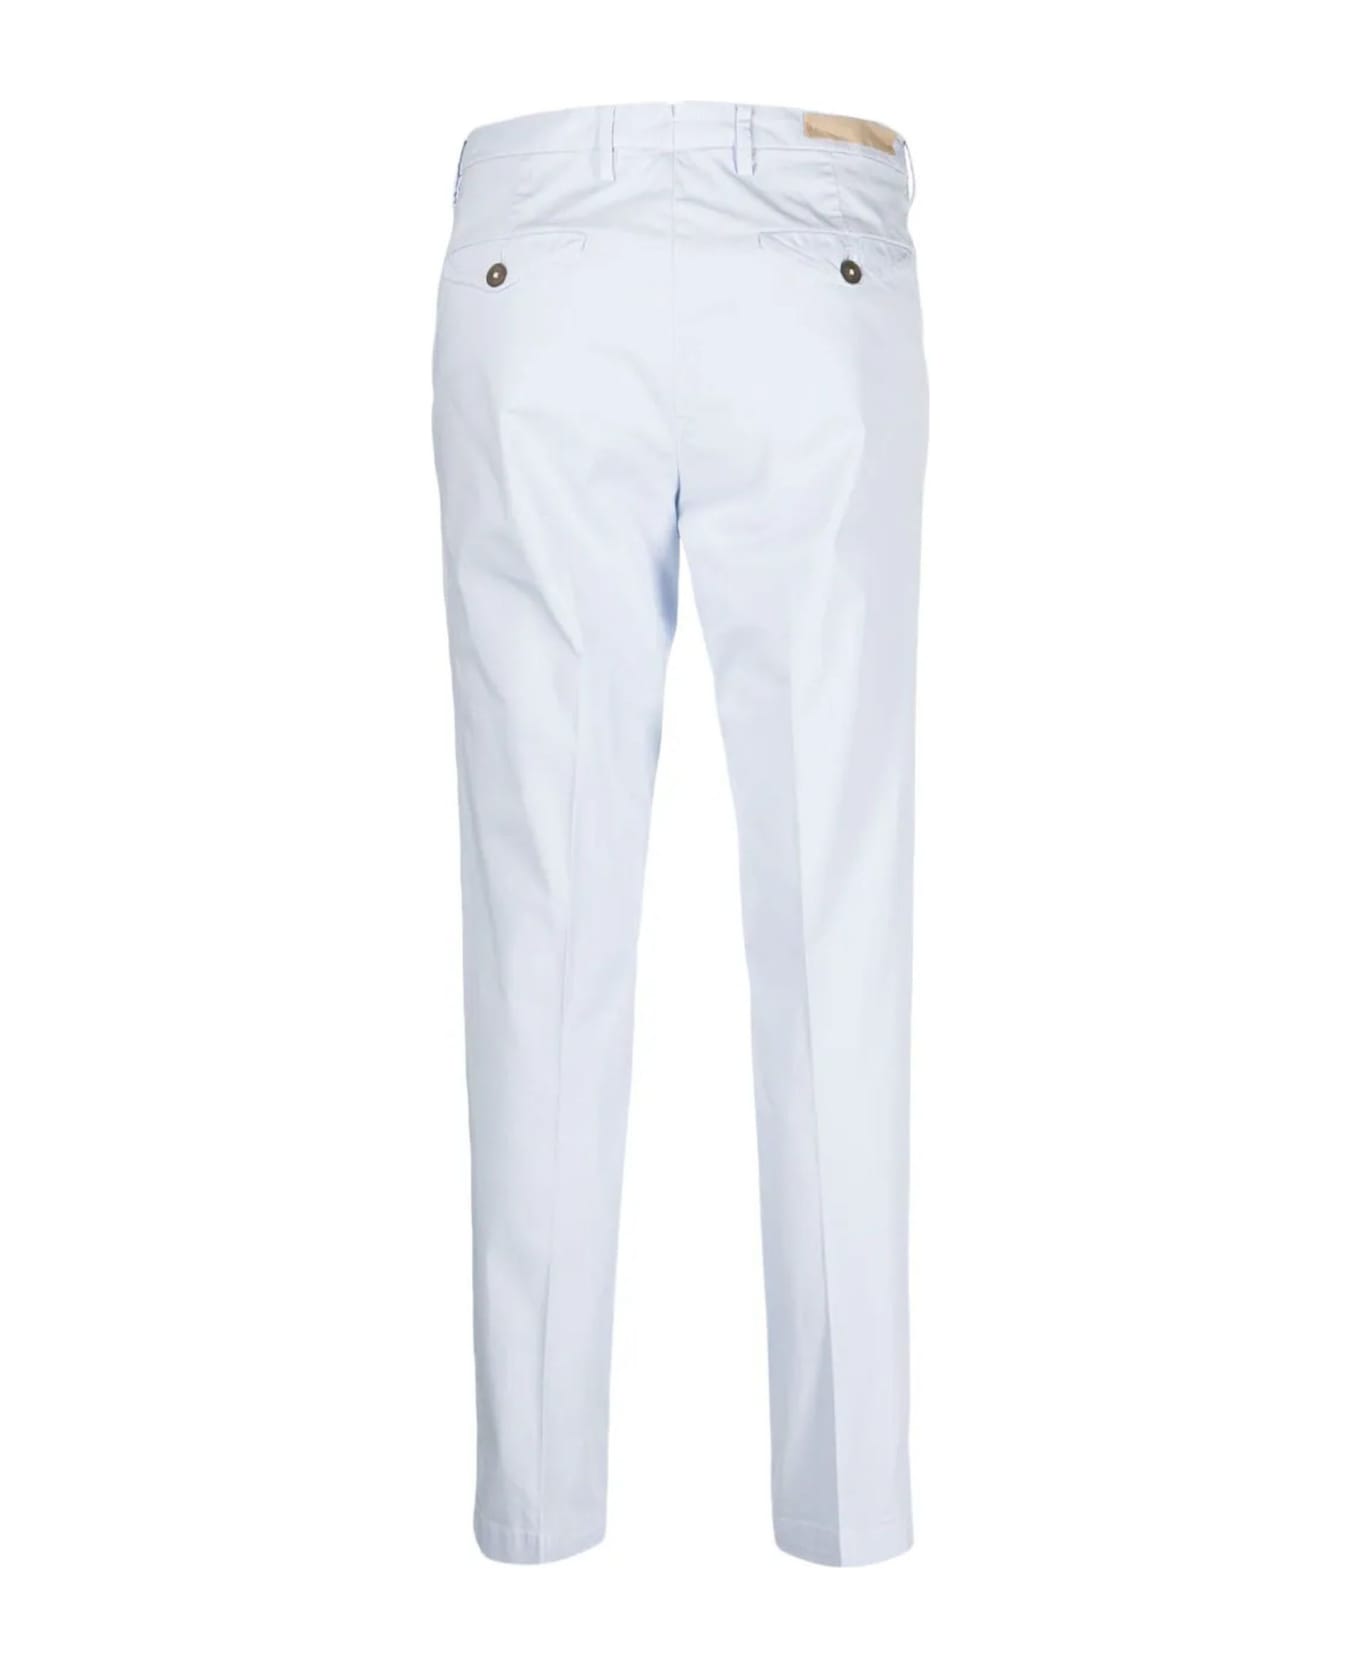 Briglia 1949 White Cotton Trousers - Light Blue